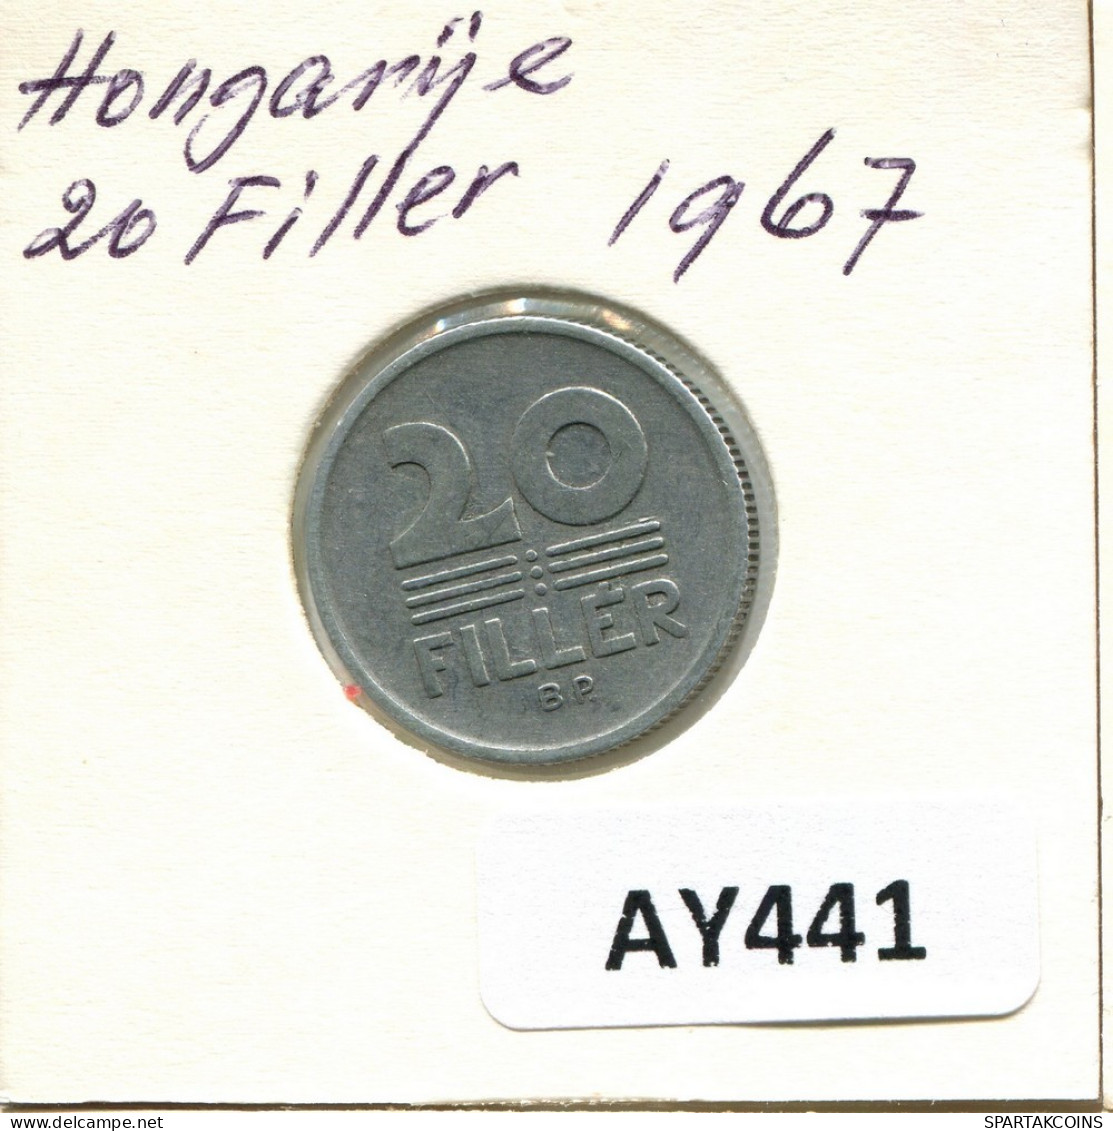 20 FILLER 1967 SIEBENBÜRGEN HUNGARY Münze #AY441.D.A - Hungary